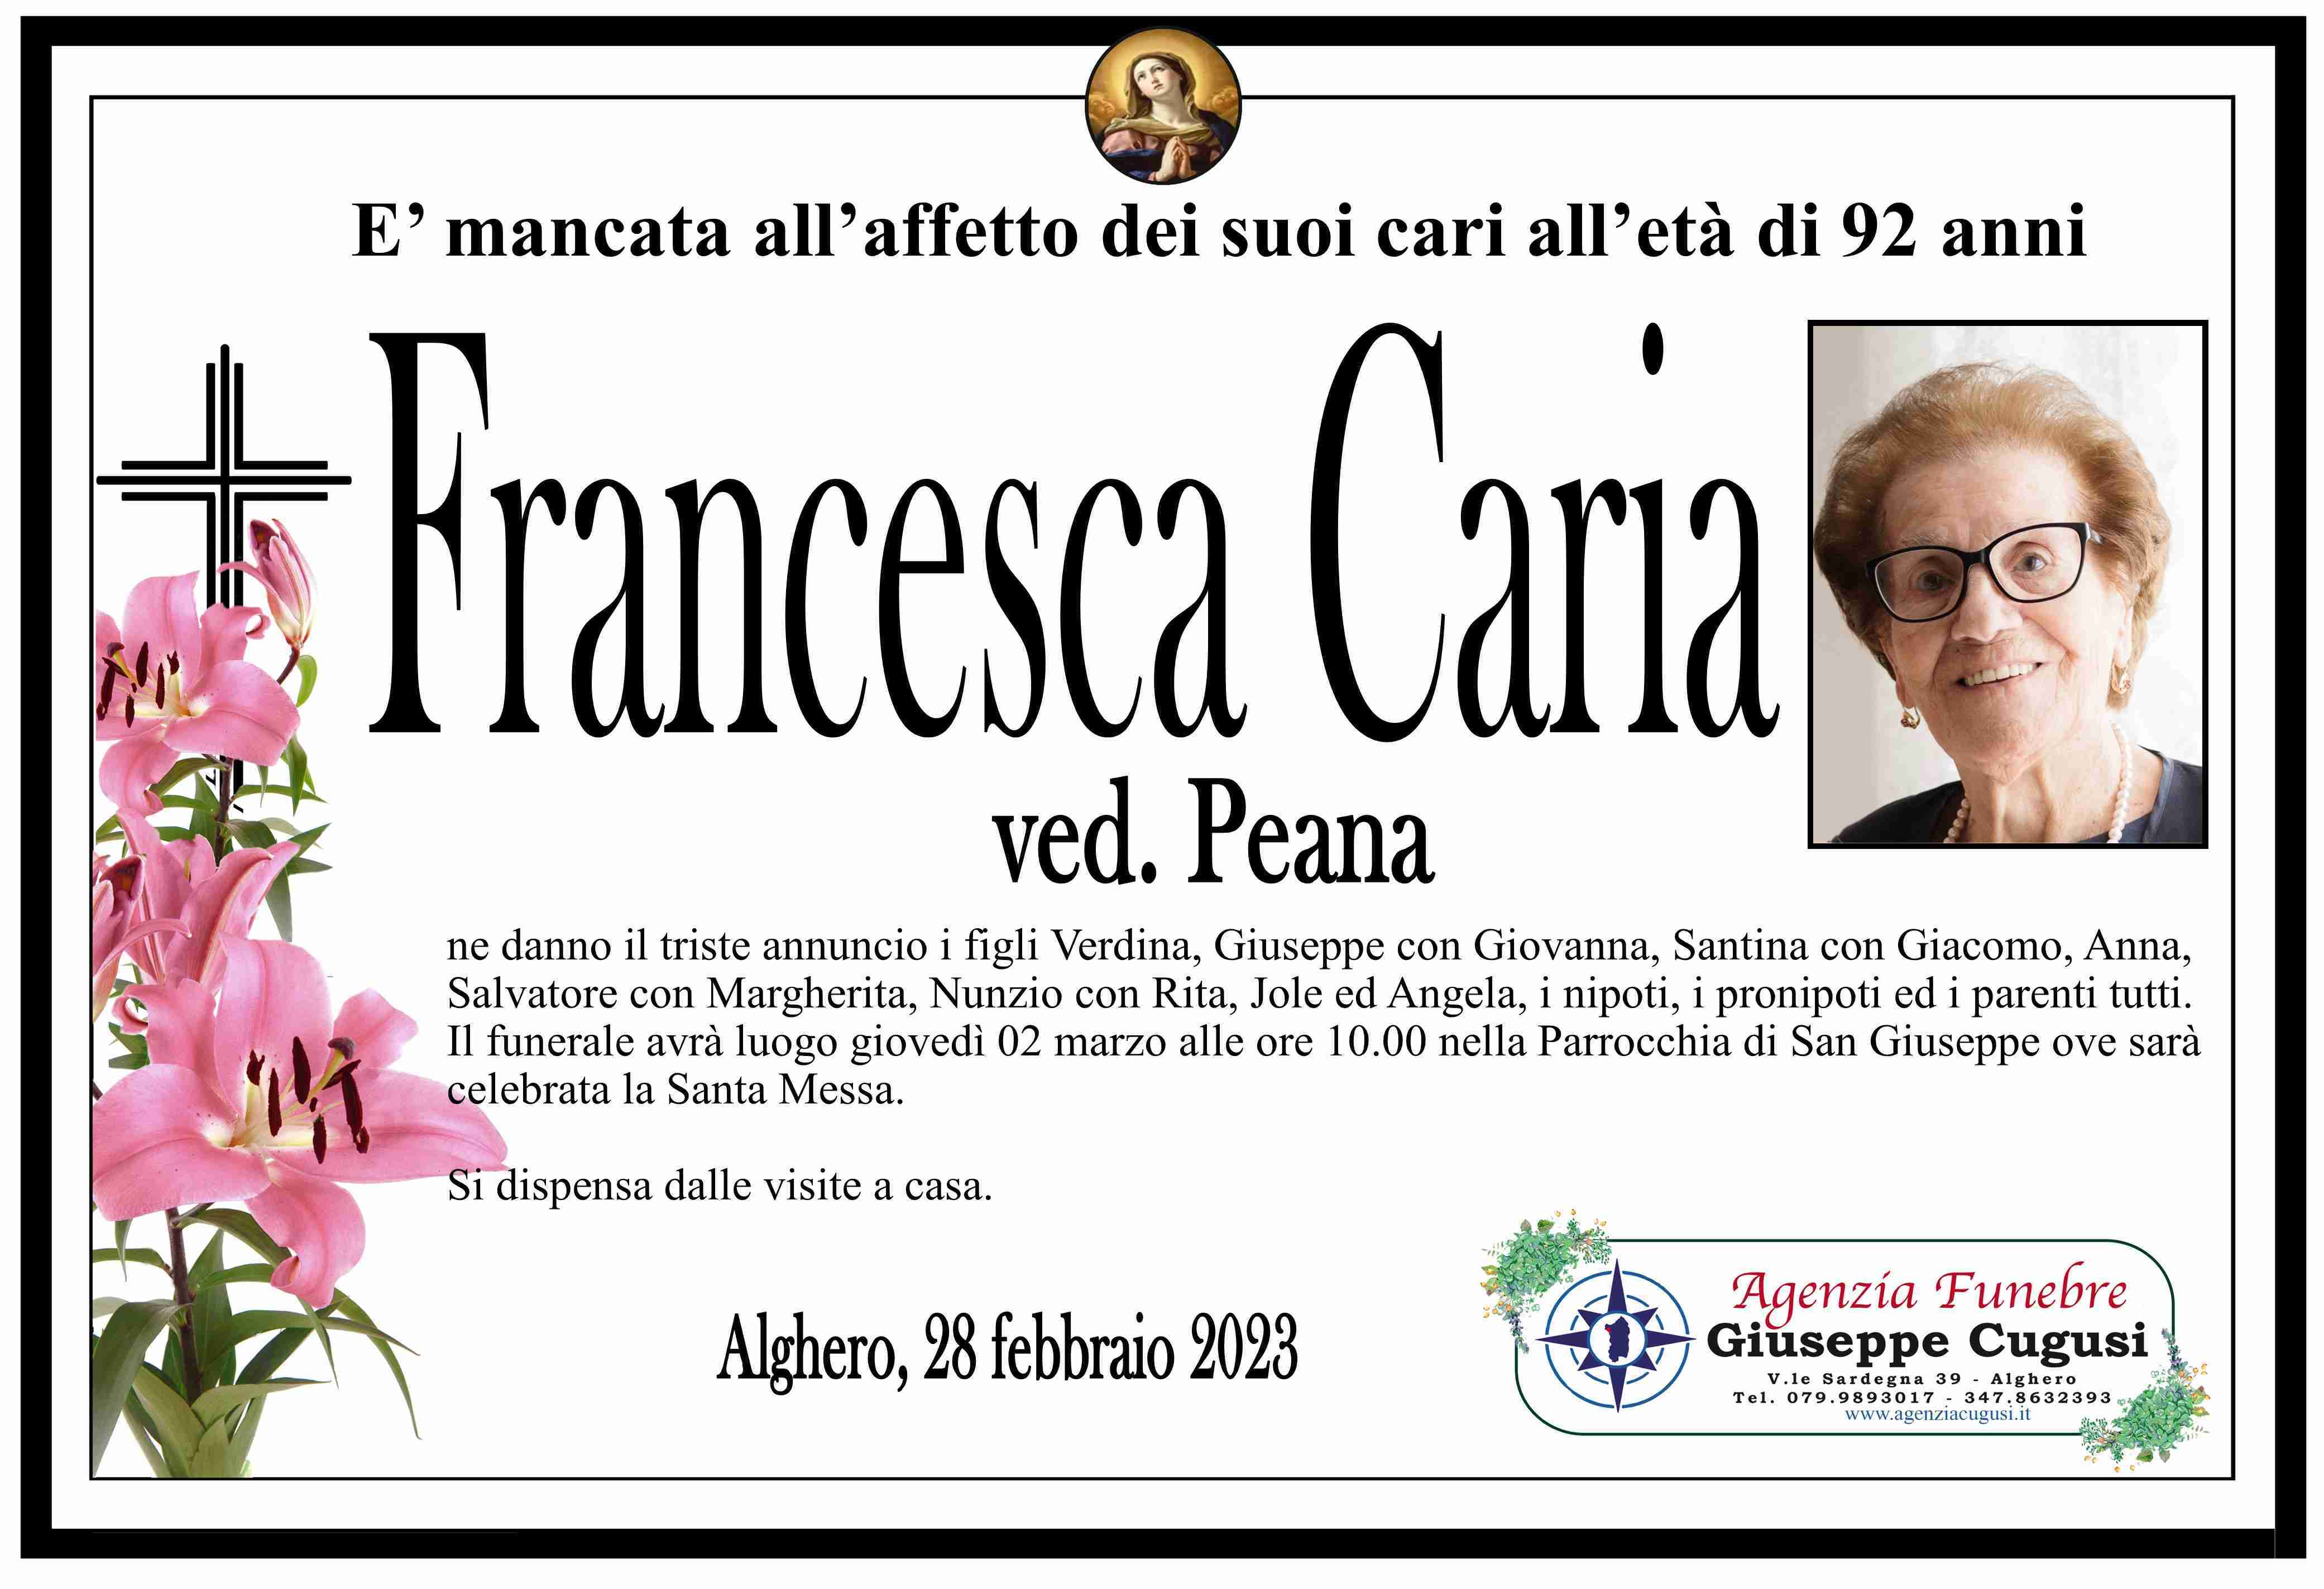 Francesca Caria